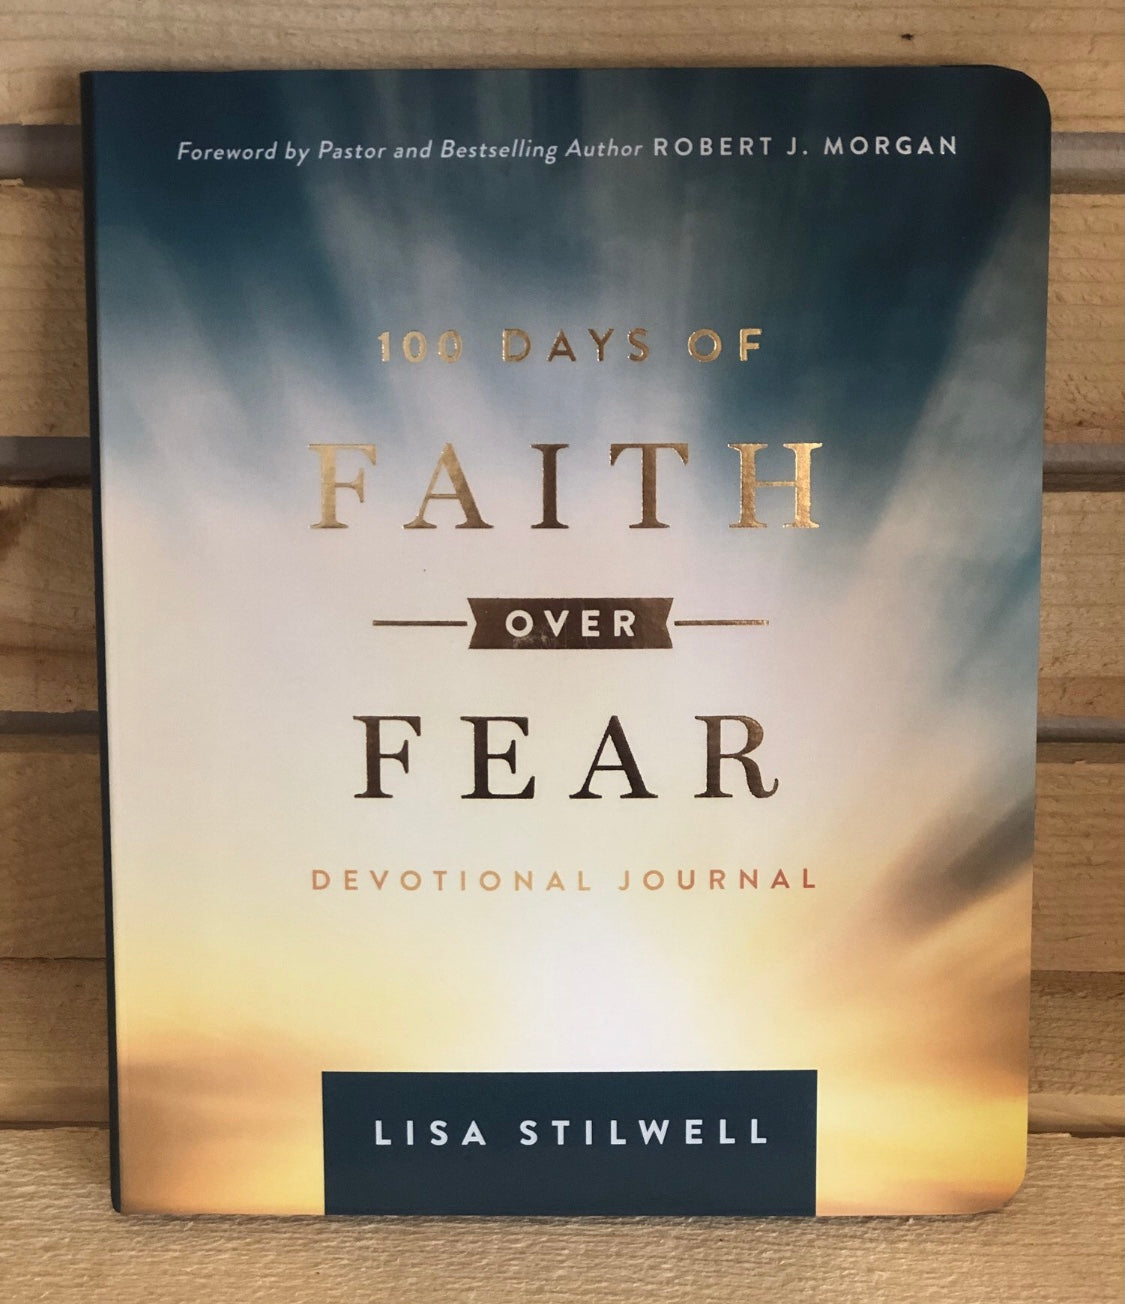 100 days of Faith over Fear by Lisa Stilwell